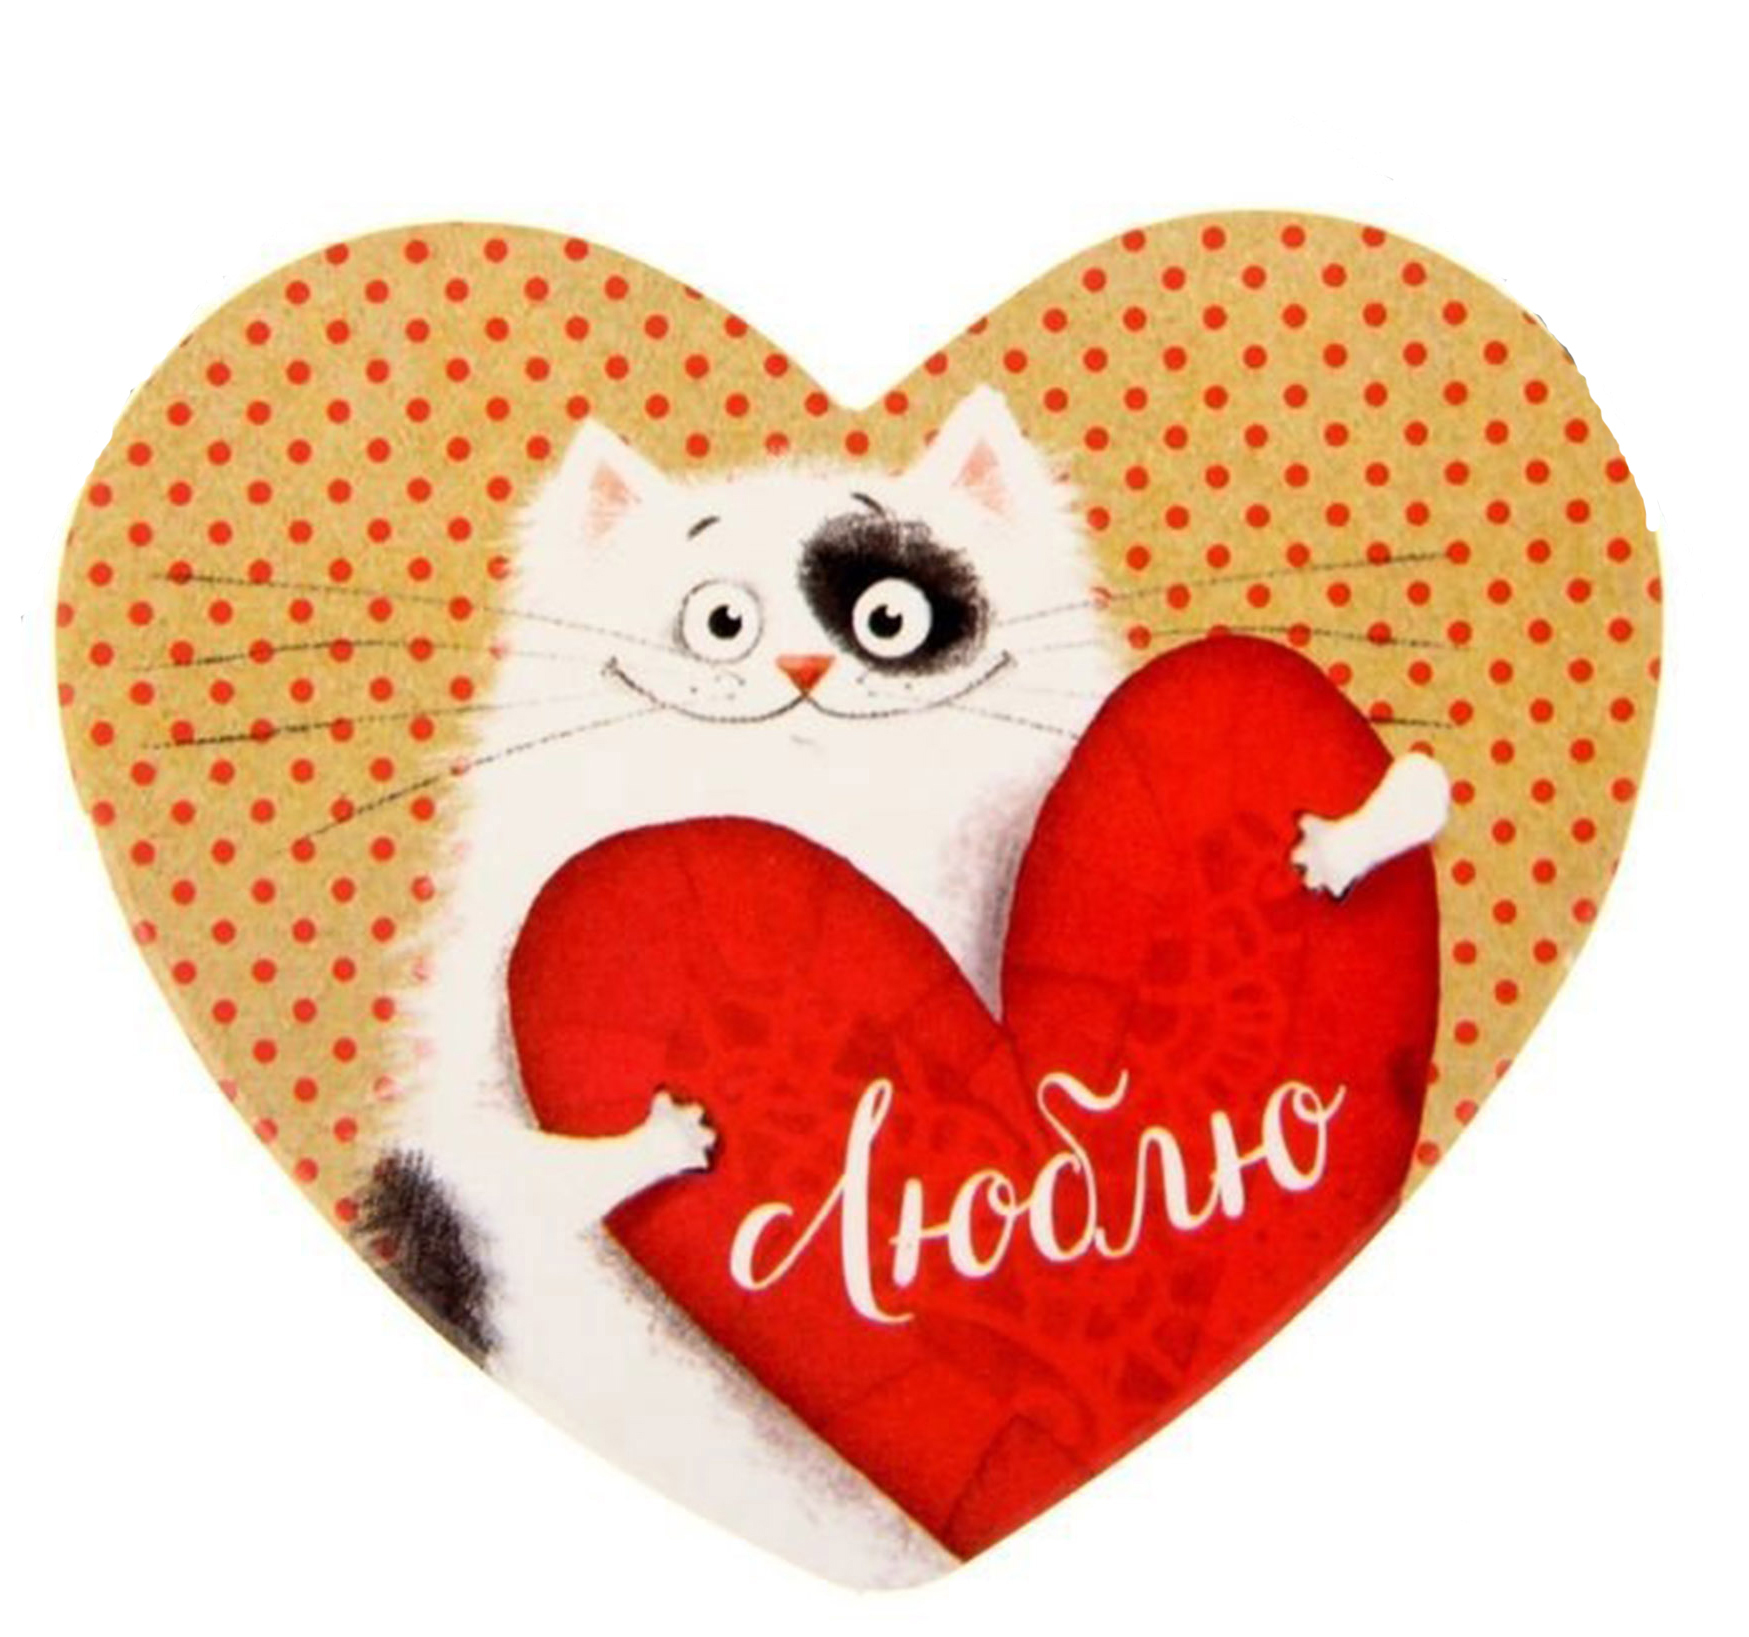 Открытка в форме сердца с изображением милого кота, держащего красное сердце с надписью люблю на фоне в горошек.